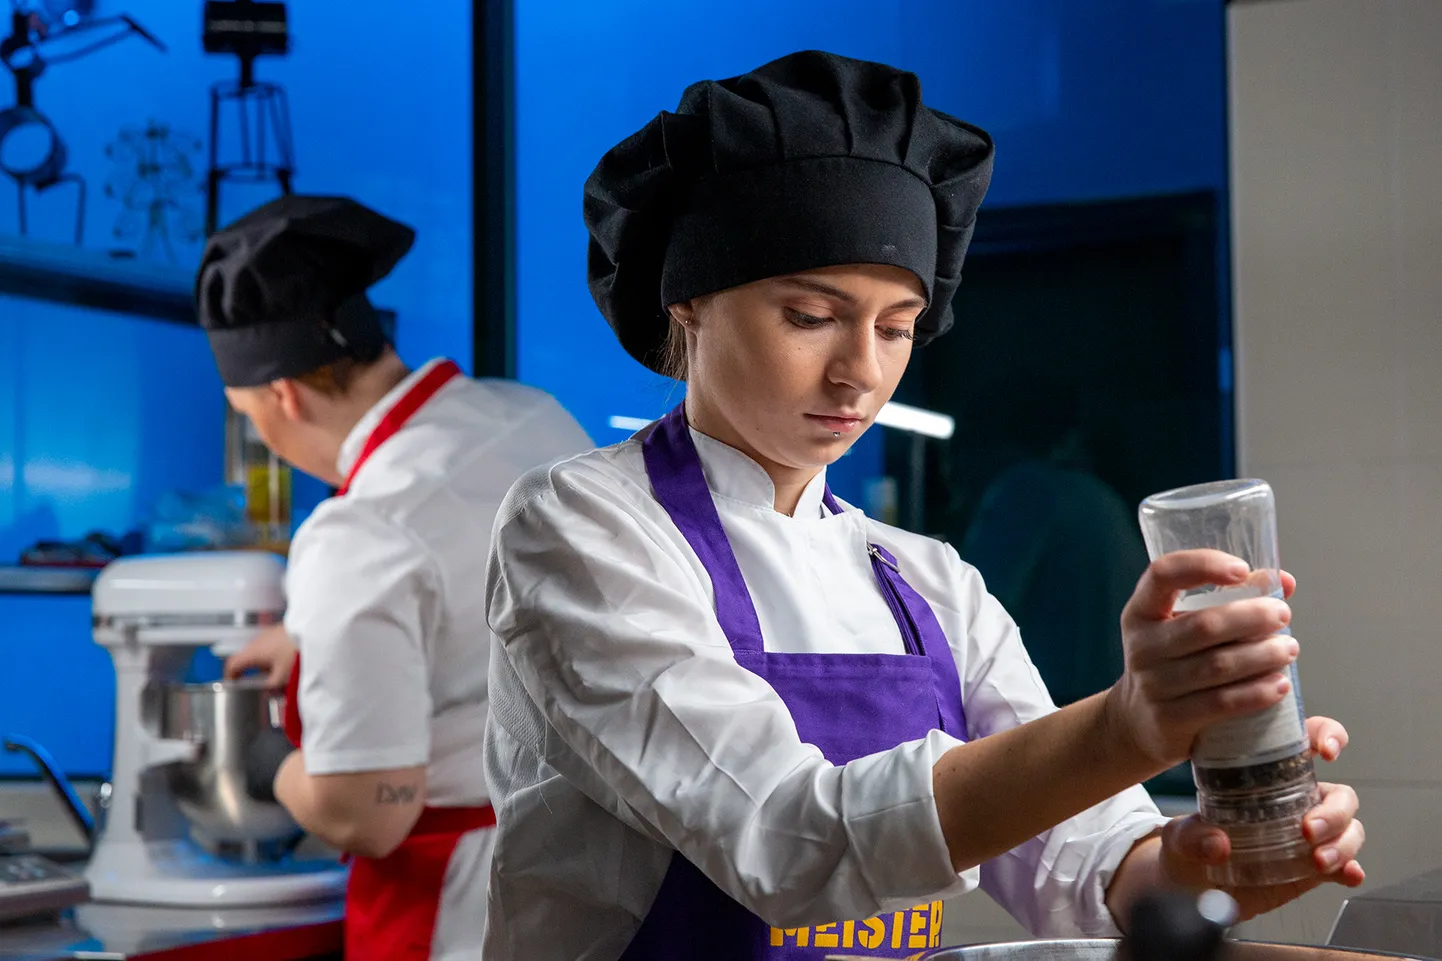 Кристина Иванова старается применить все навыки пекарского дела, приобретенные в Вильяндиском профцентре.